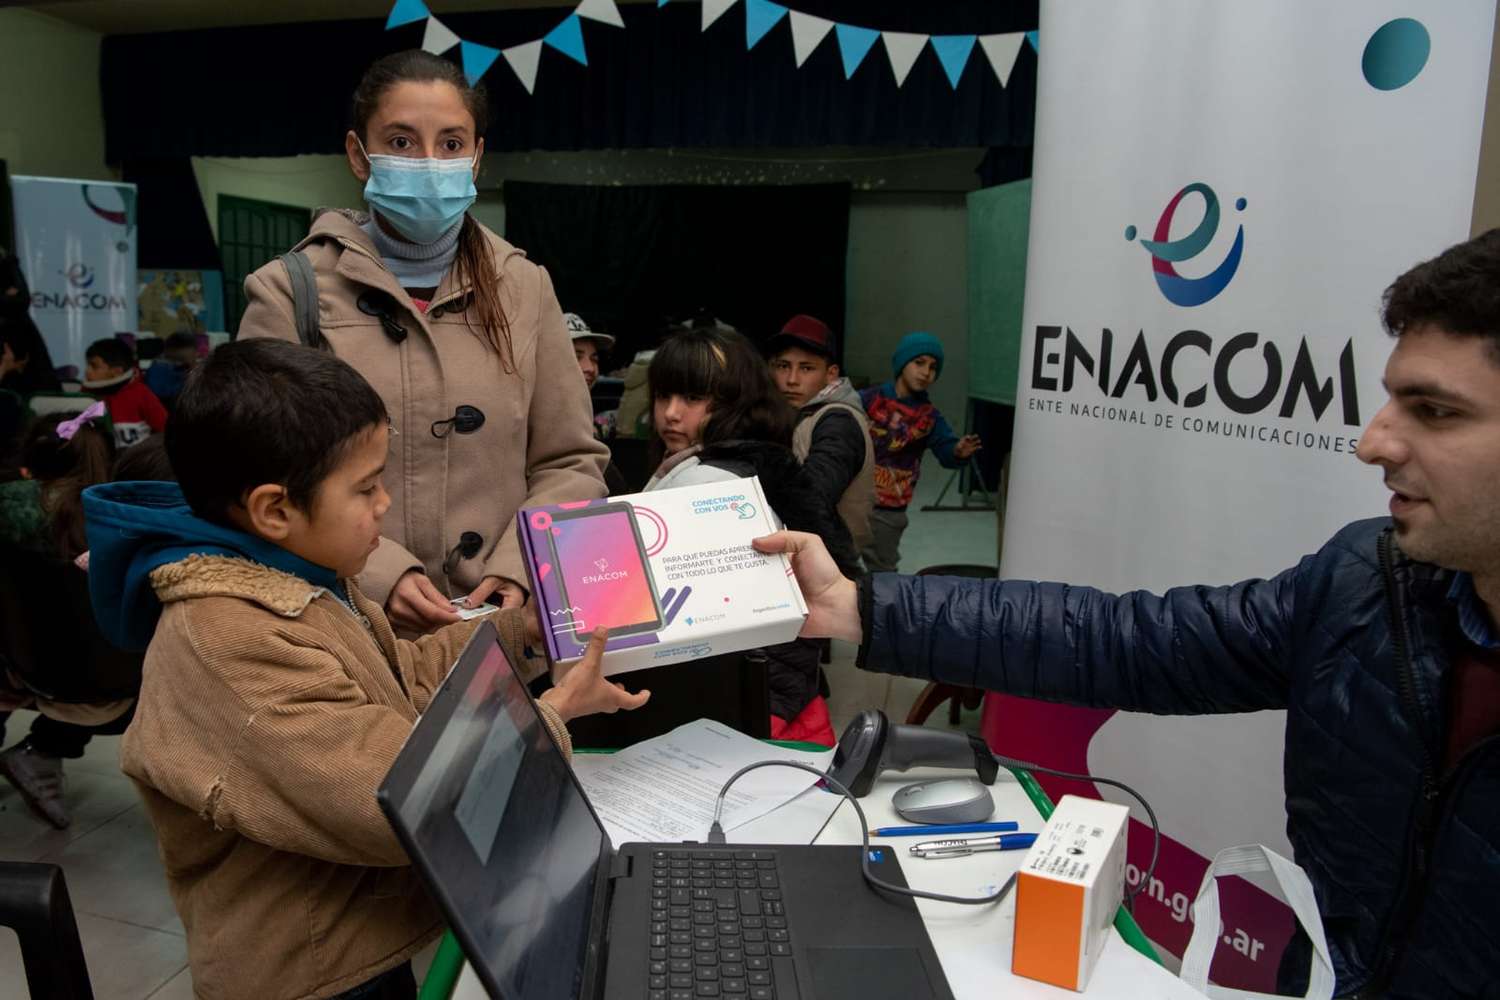 Enacom entregó tablets y celulares a chicos de Gualeguaychú en el marco del programa “Conectando con Vos”